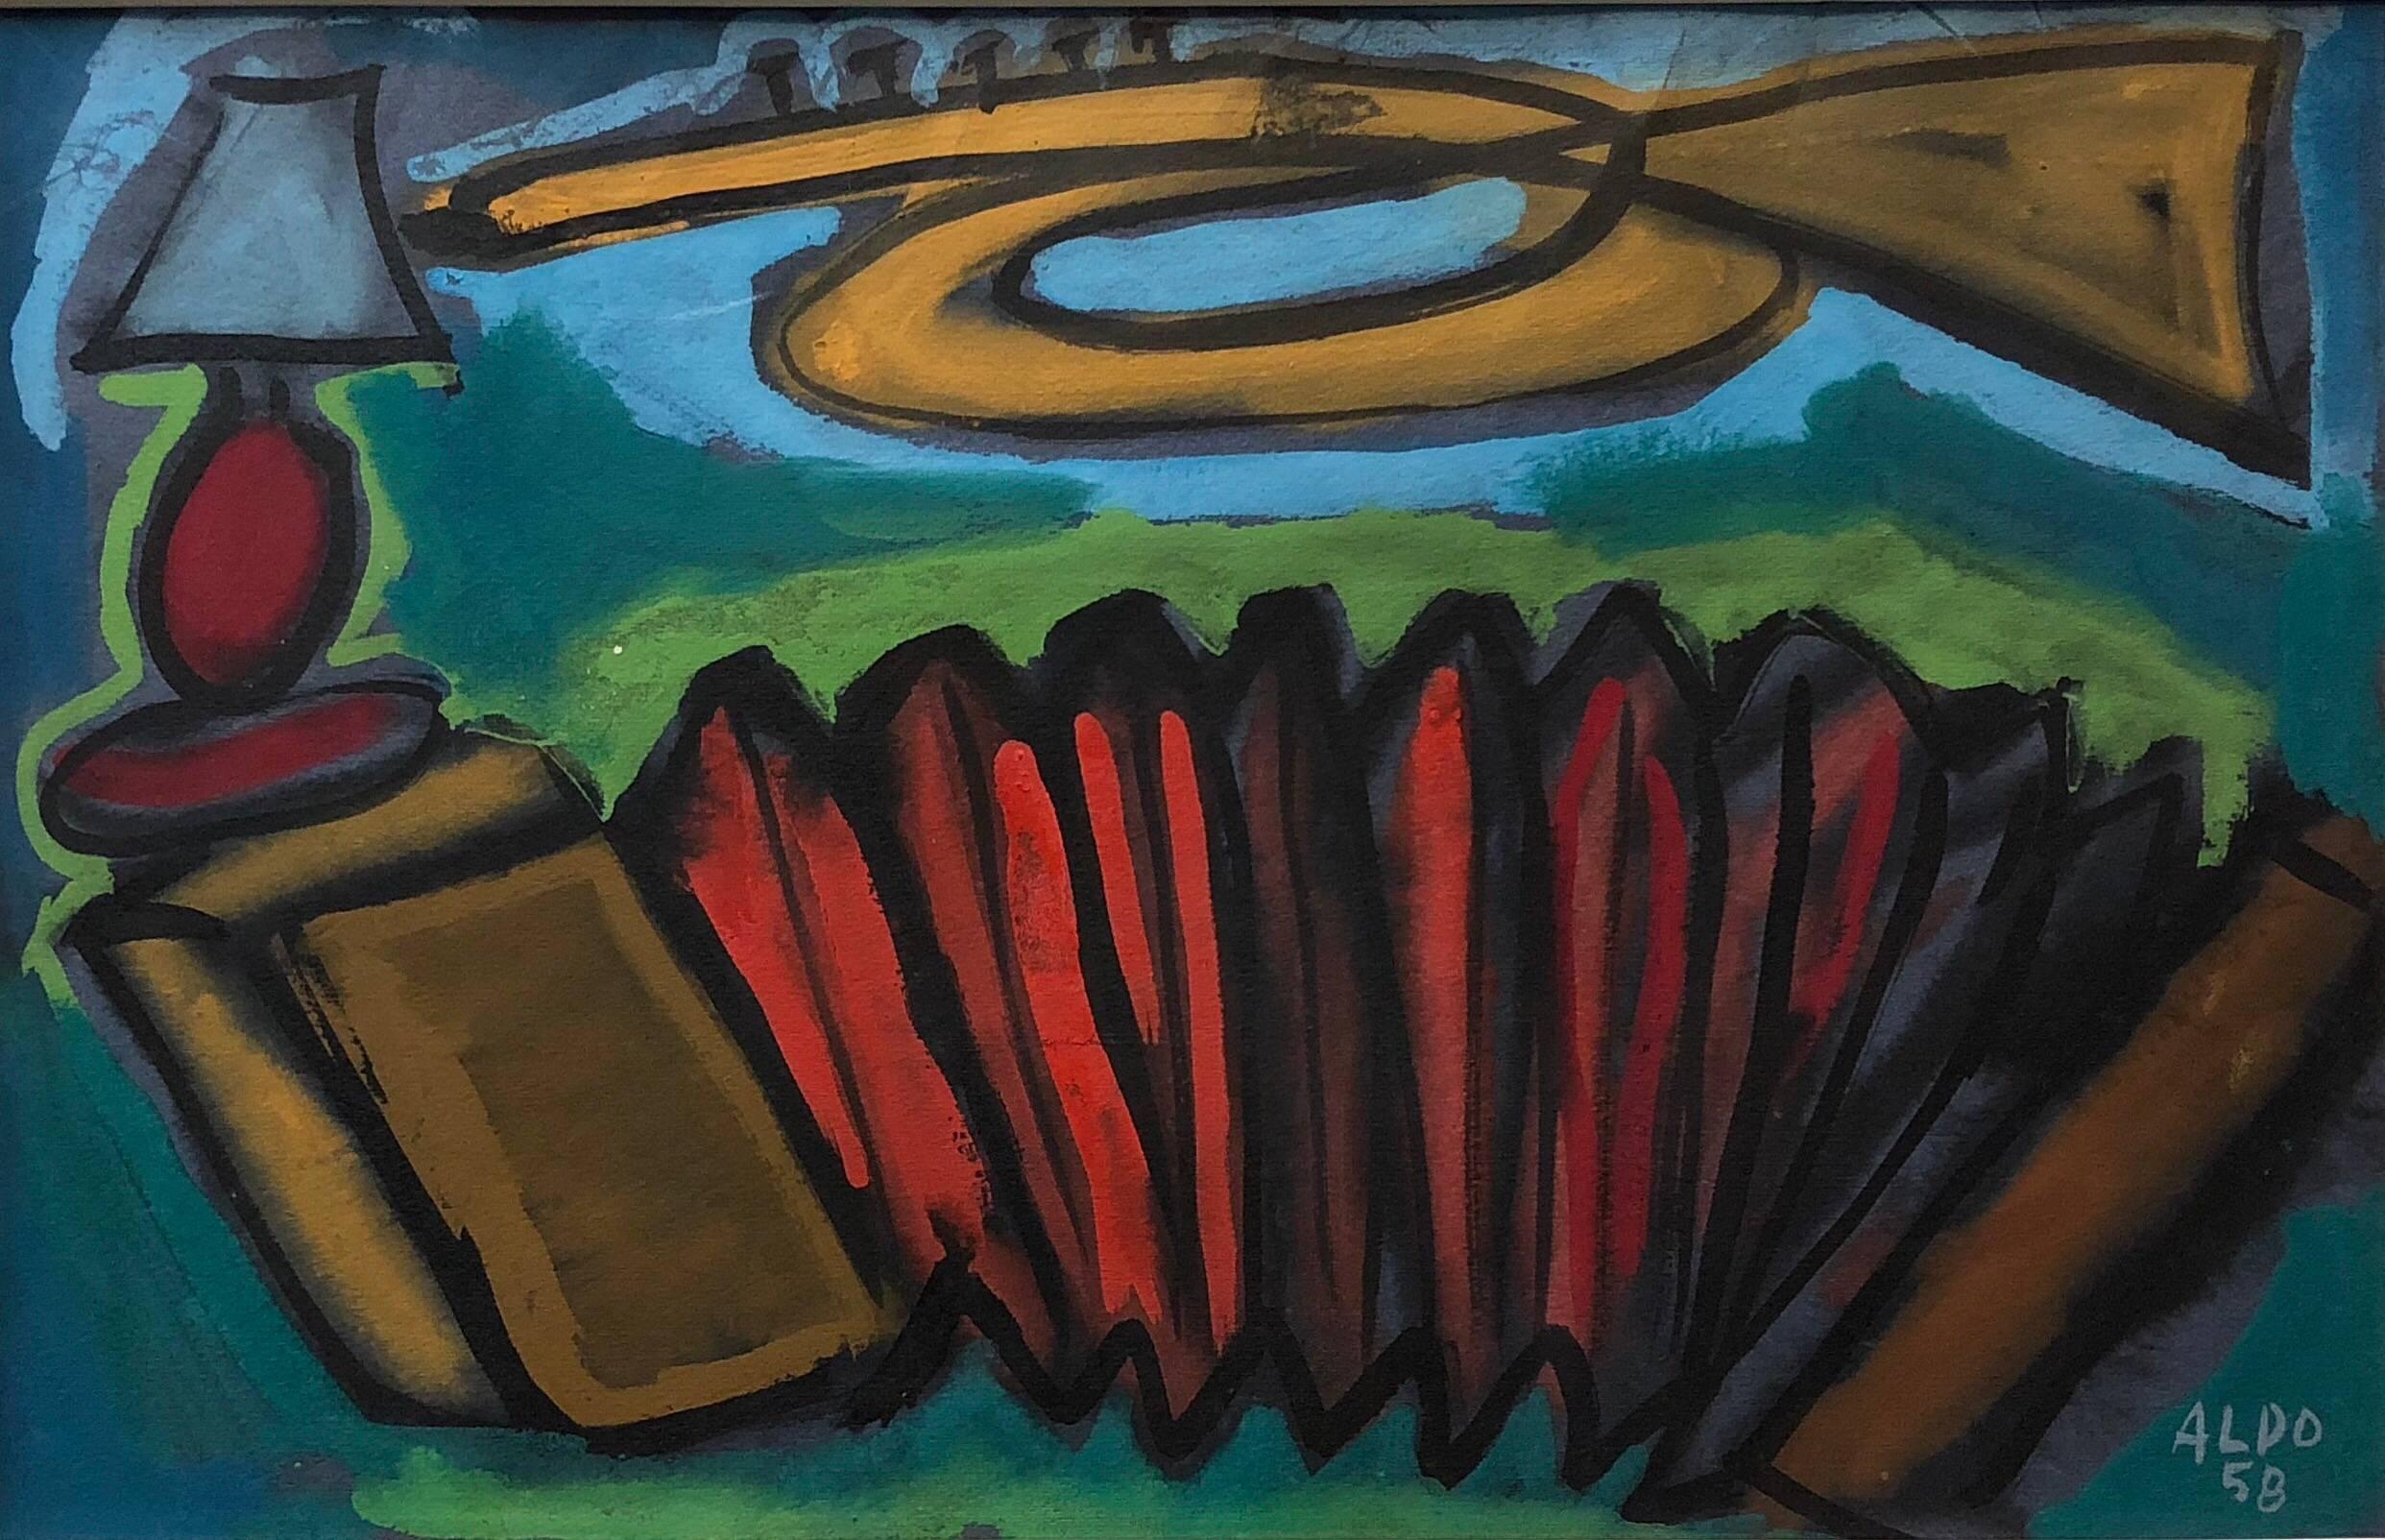 Unknown Still-Life Painting – Abstraktes, farbenfrohes, französisches modernistisches Gemälde, 1958, signiert Aldo 